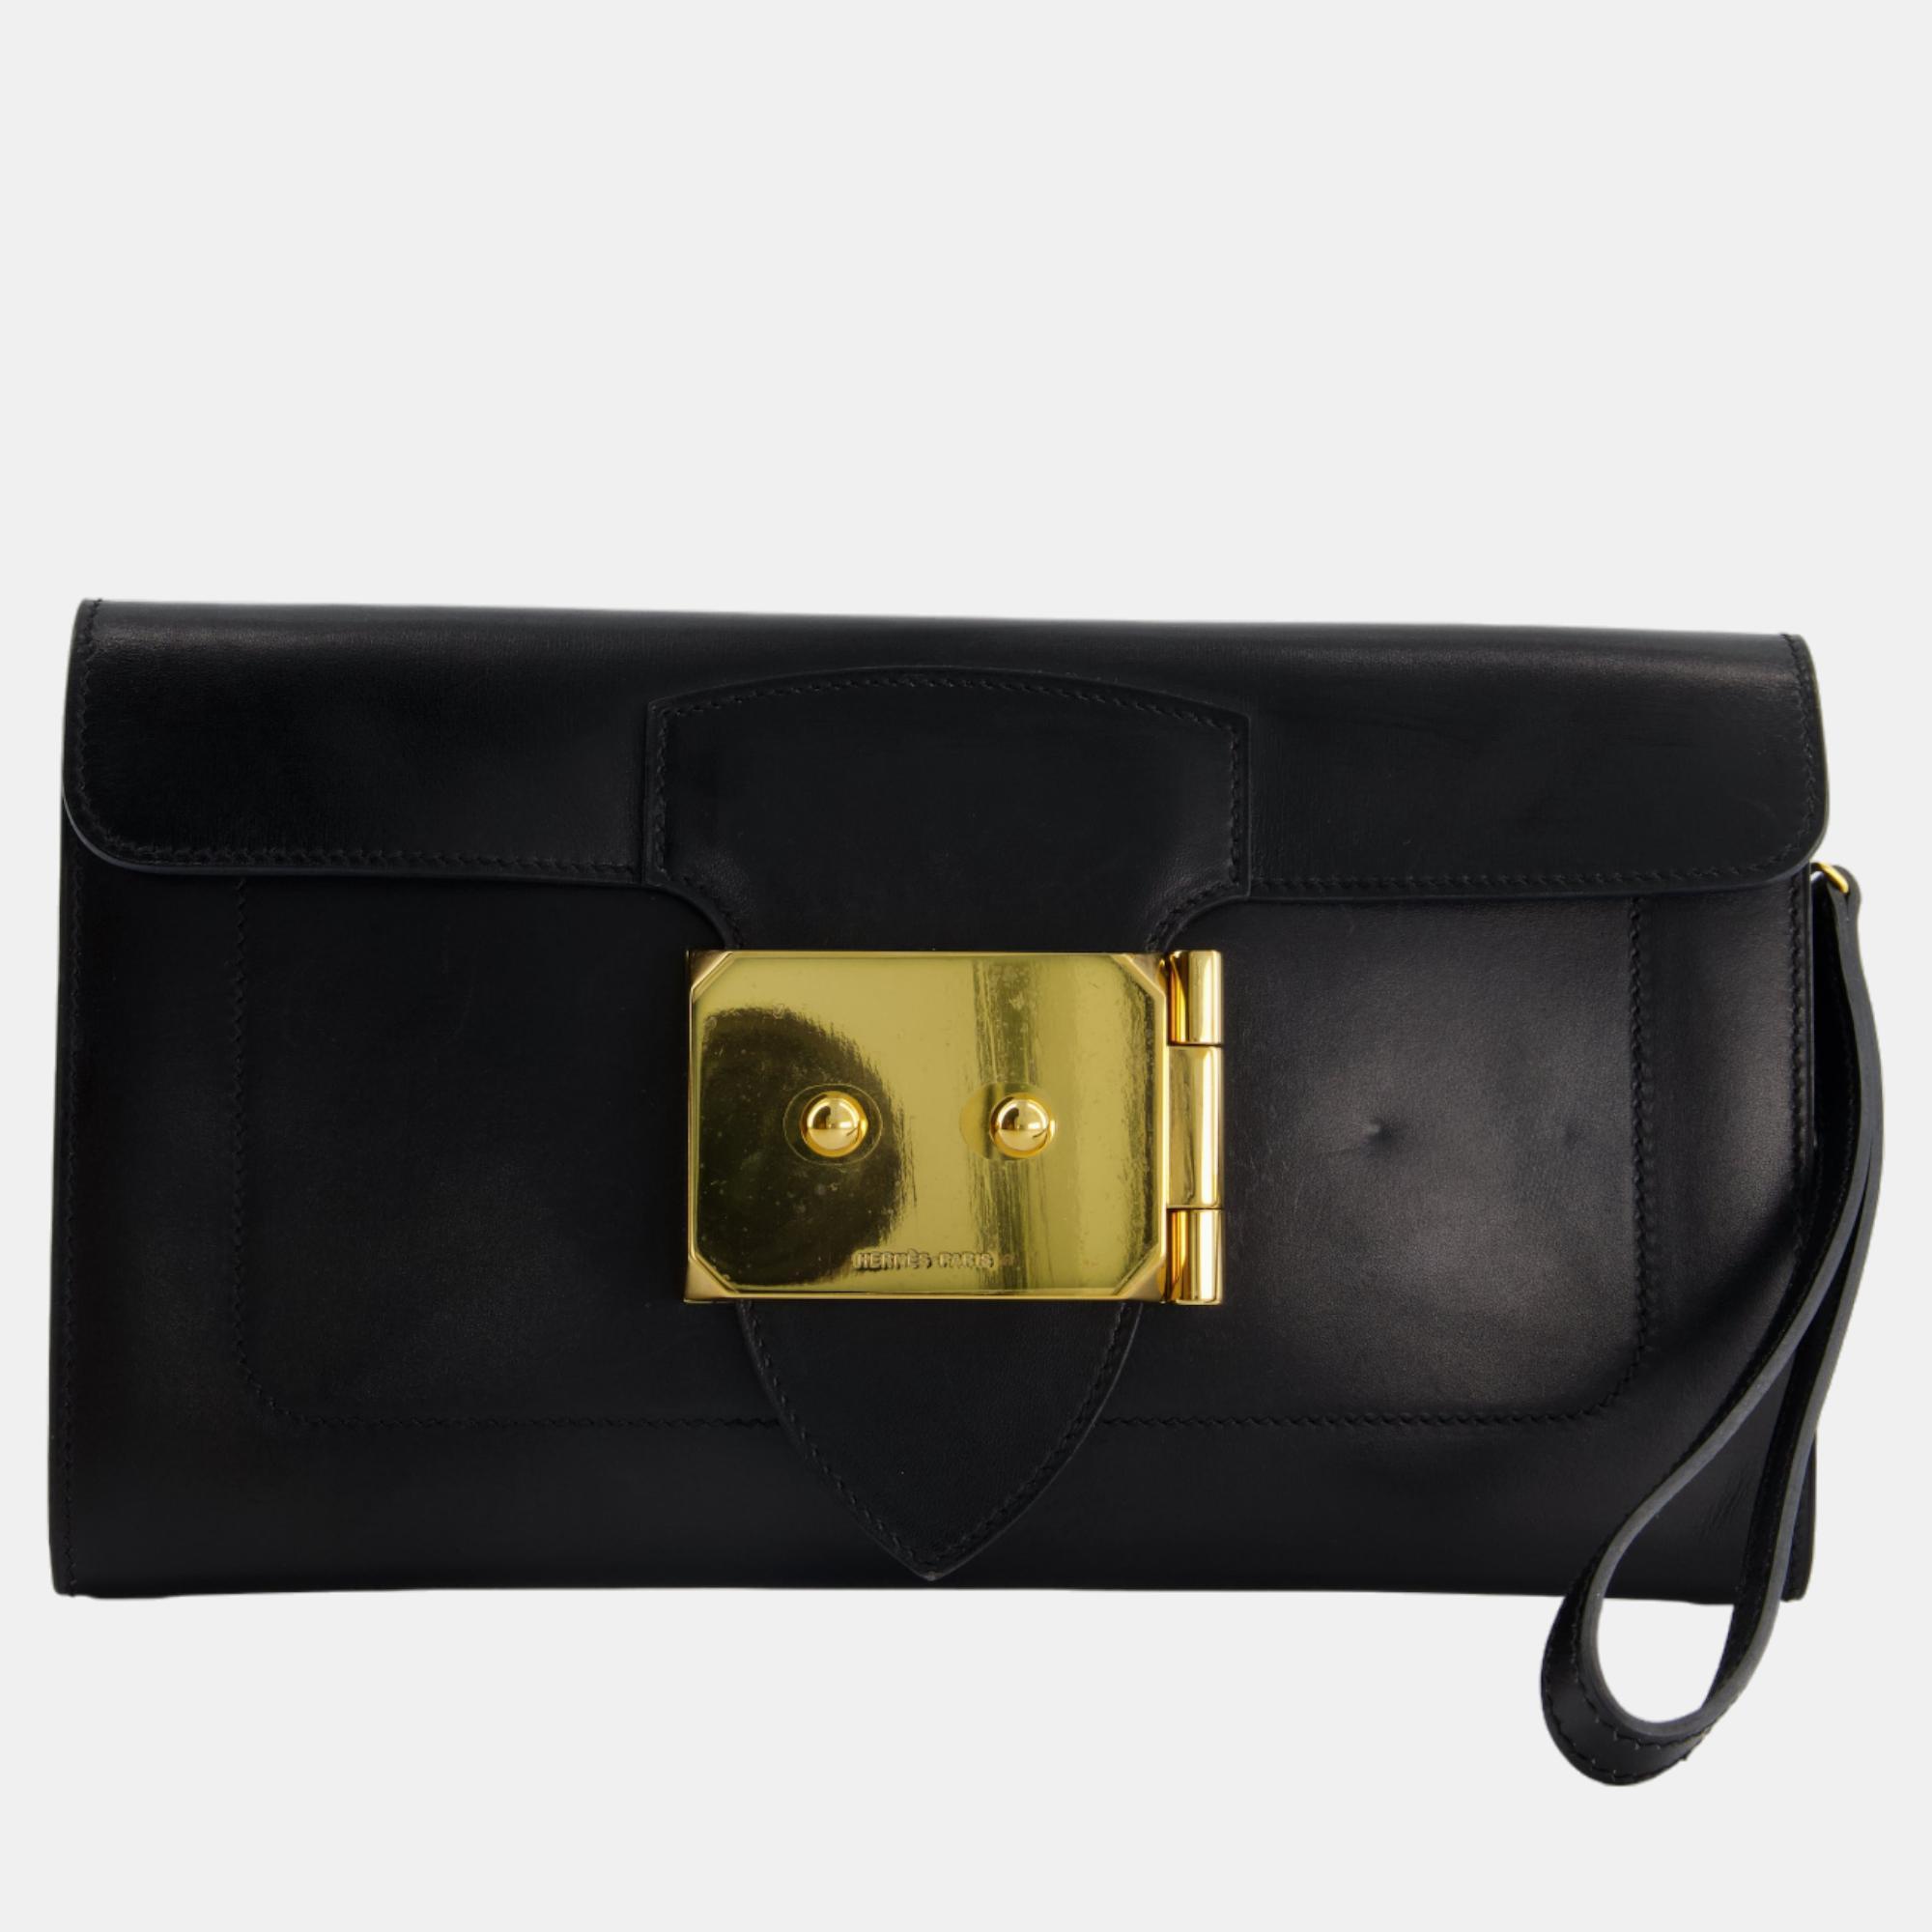 

Hermes Goodluck Clutch Bag In Tadelakt Leather with Gold Hardware, Black